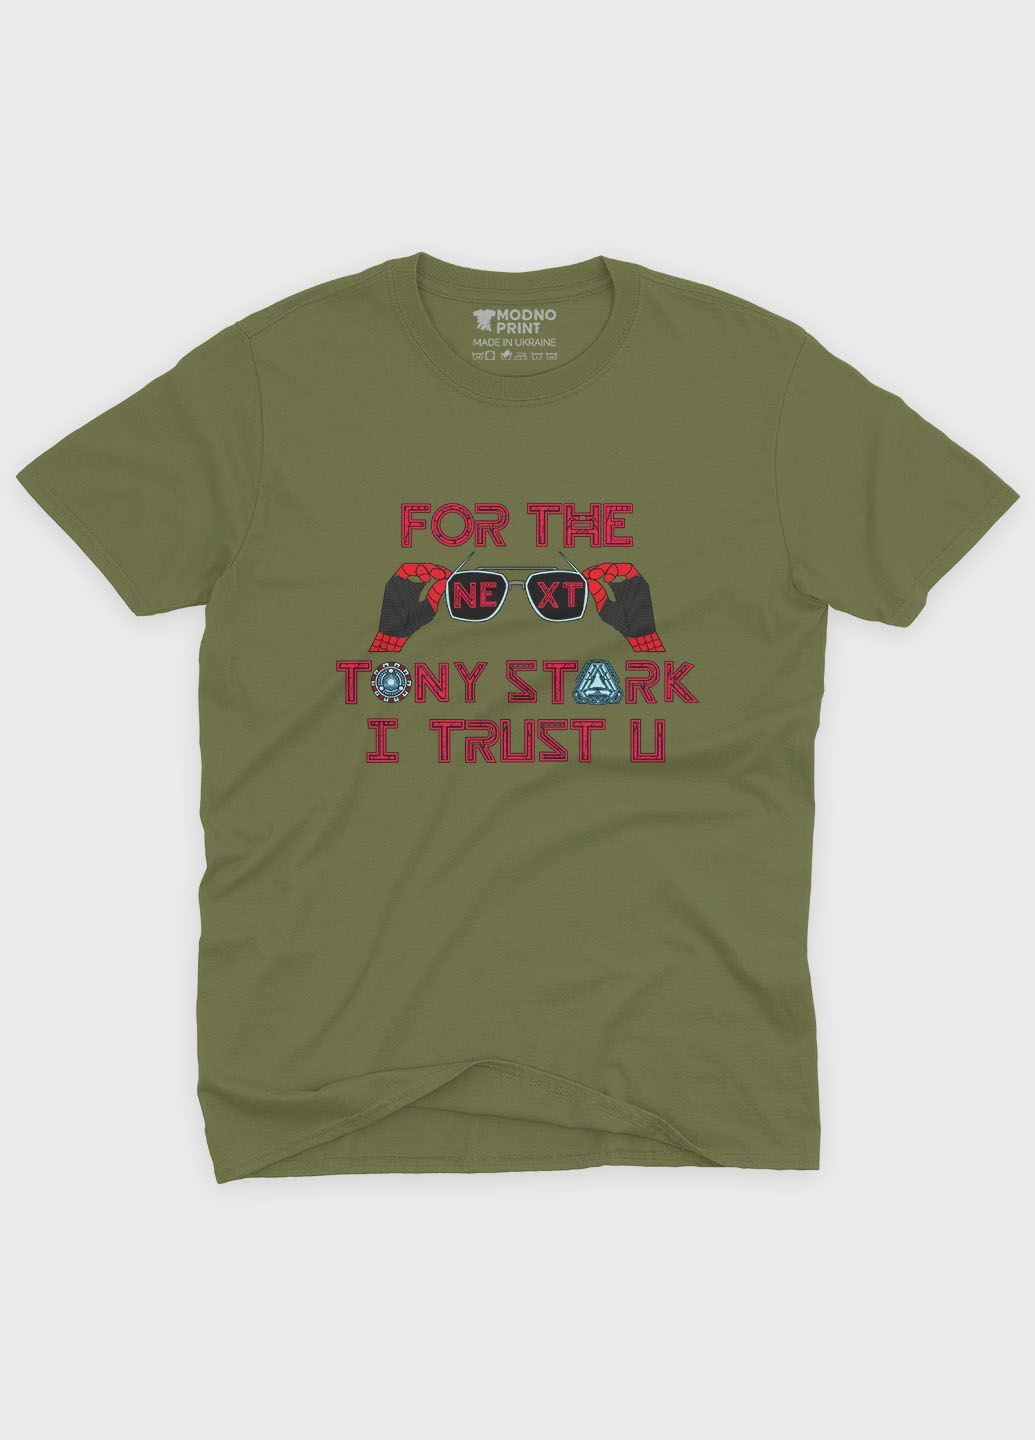 Хаки (оливковая) мужская футболка с принтом супергероя - железный человек (ts001-1-hgr-006-016-018) Modno